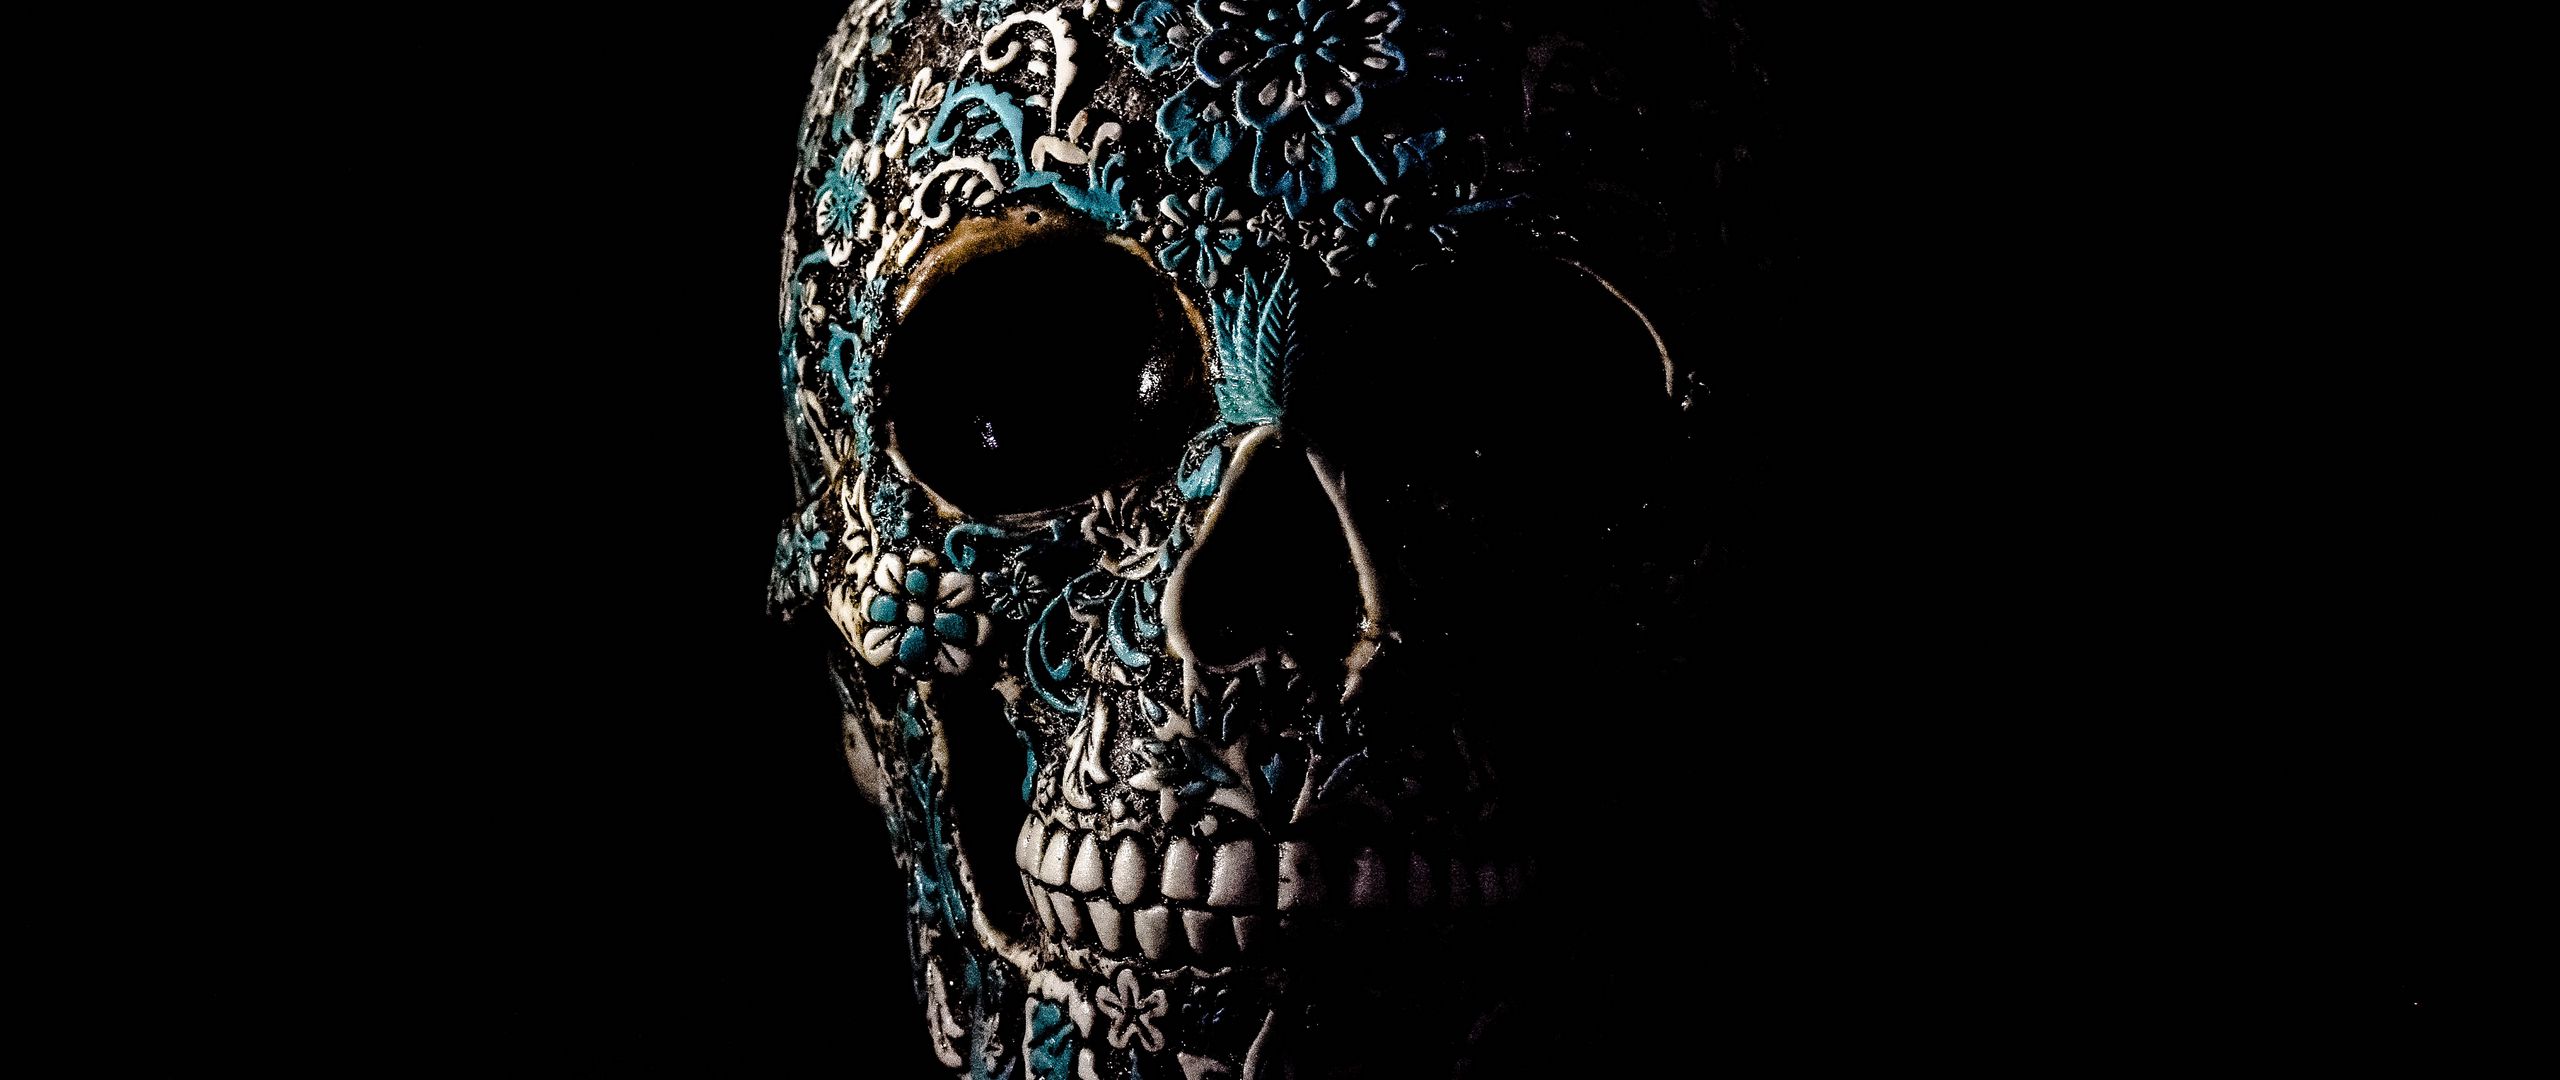 2560x1080 Wallpaper skull, dark, patterns, bones